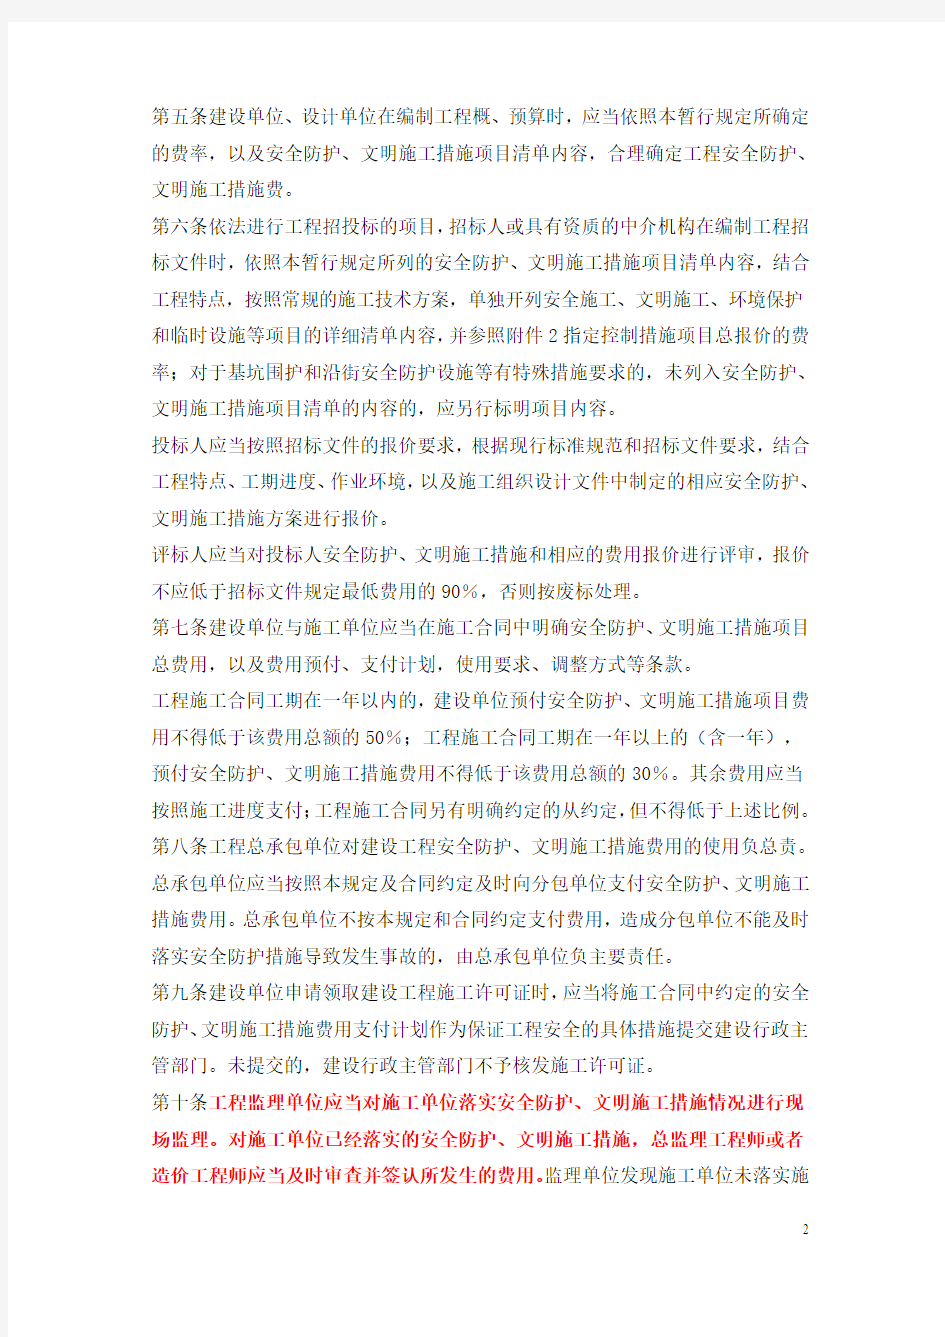 《上海市建设工程安全防护、文明施工措施费用管理暂行规定》的通知(沪建交【2006】445号)